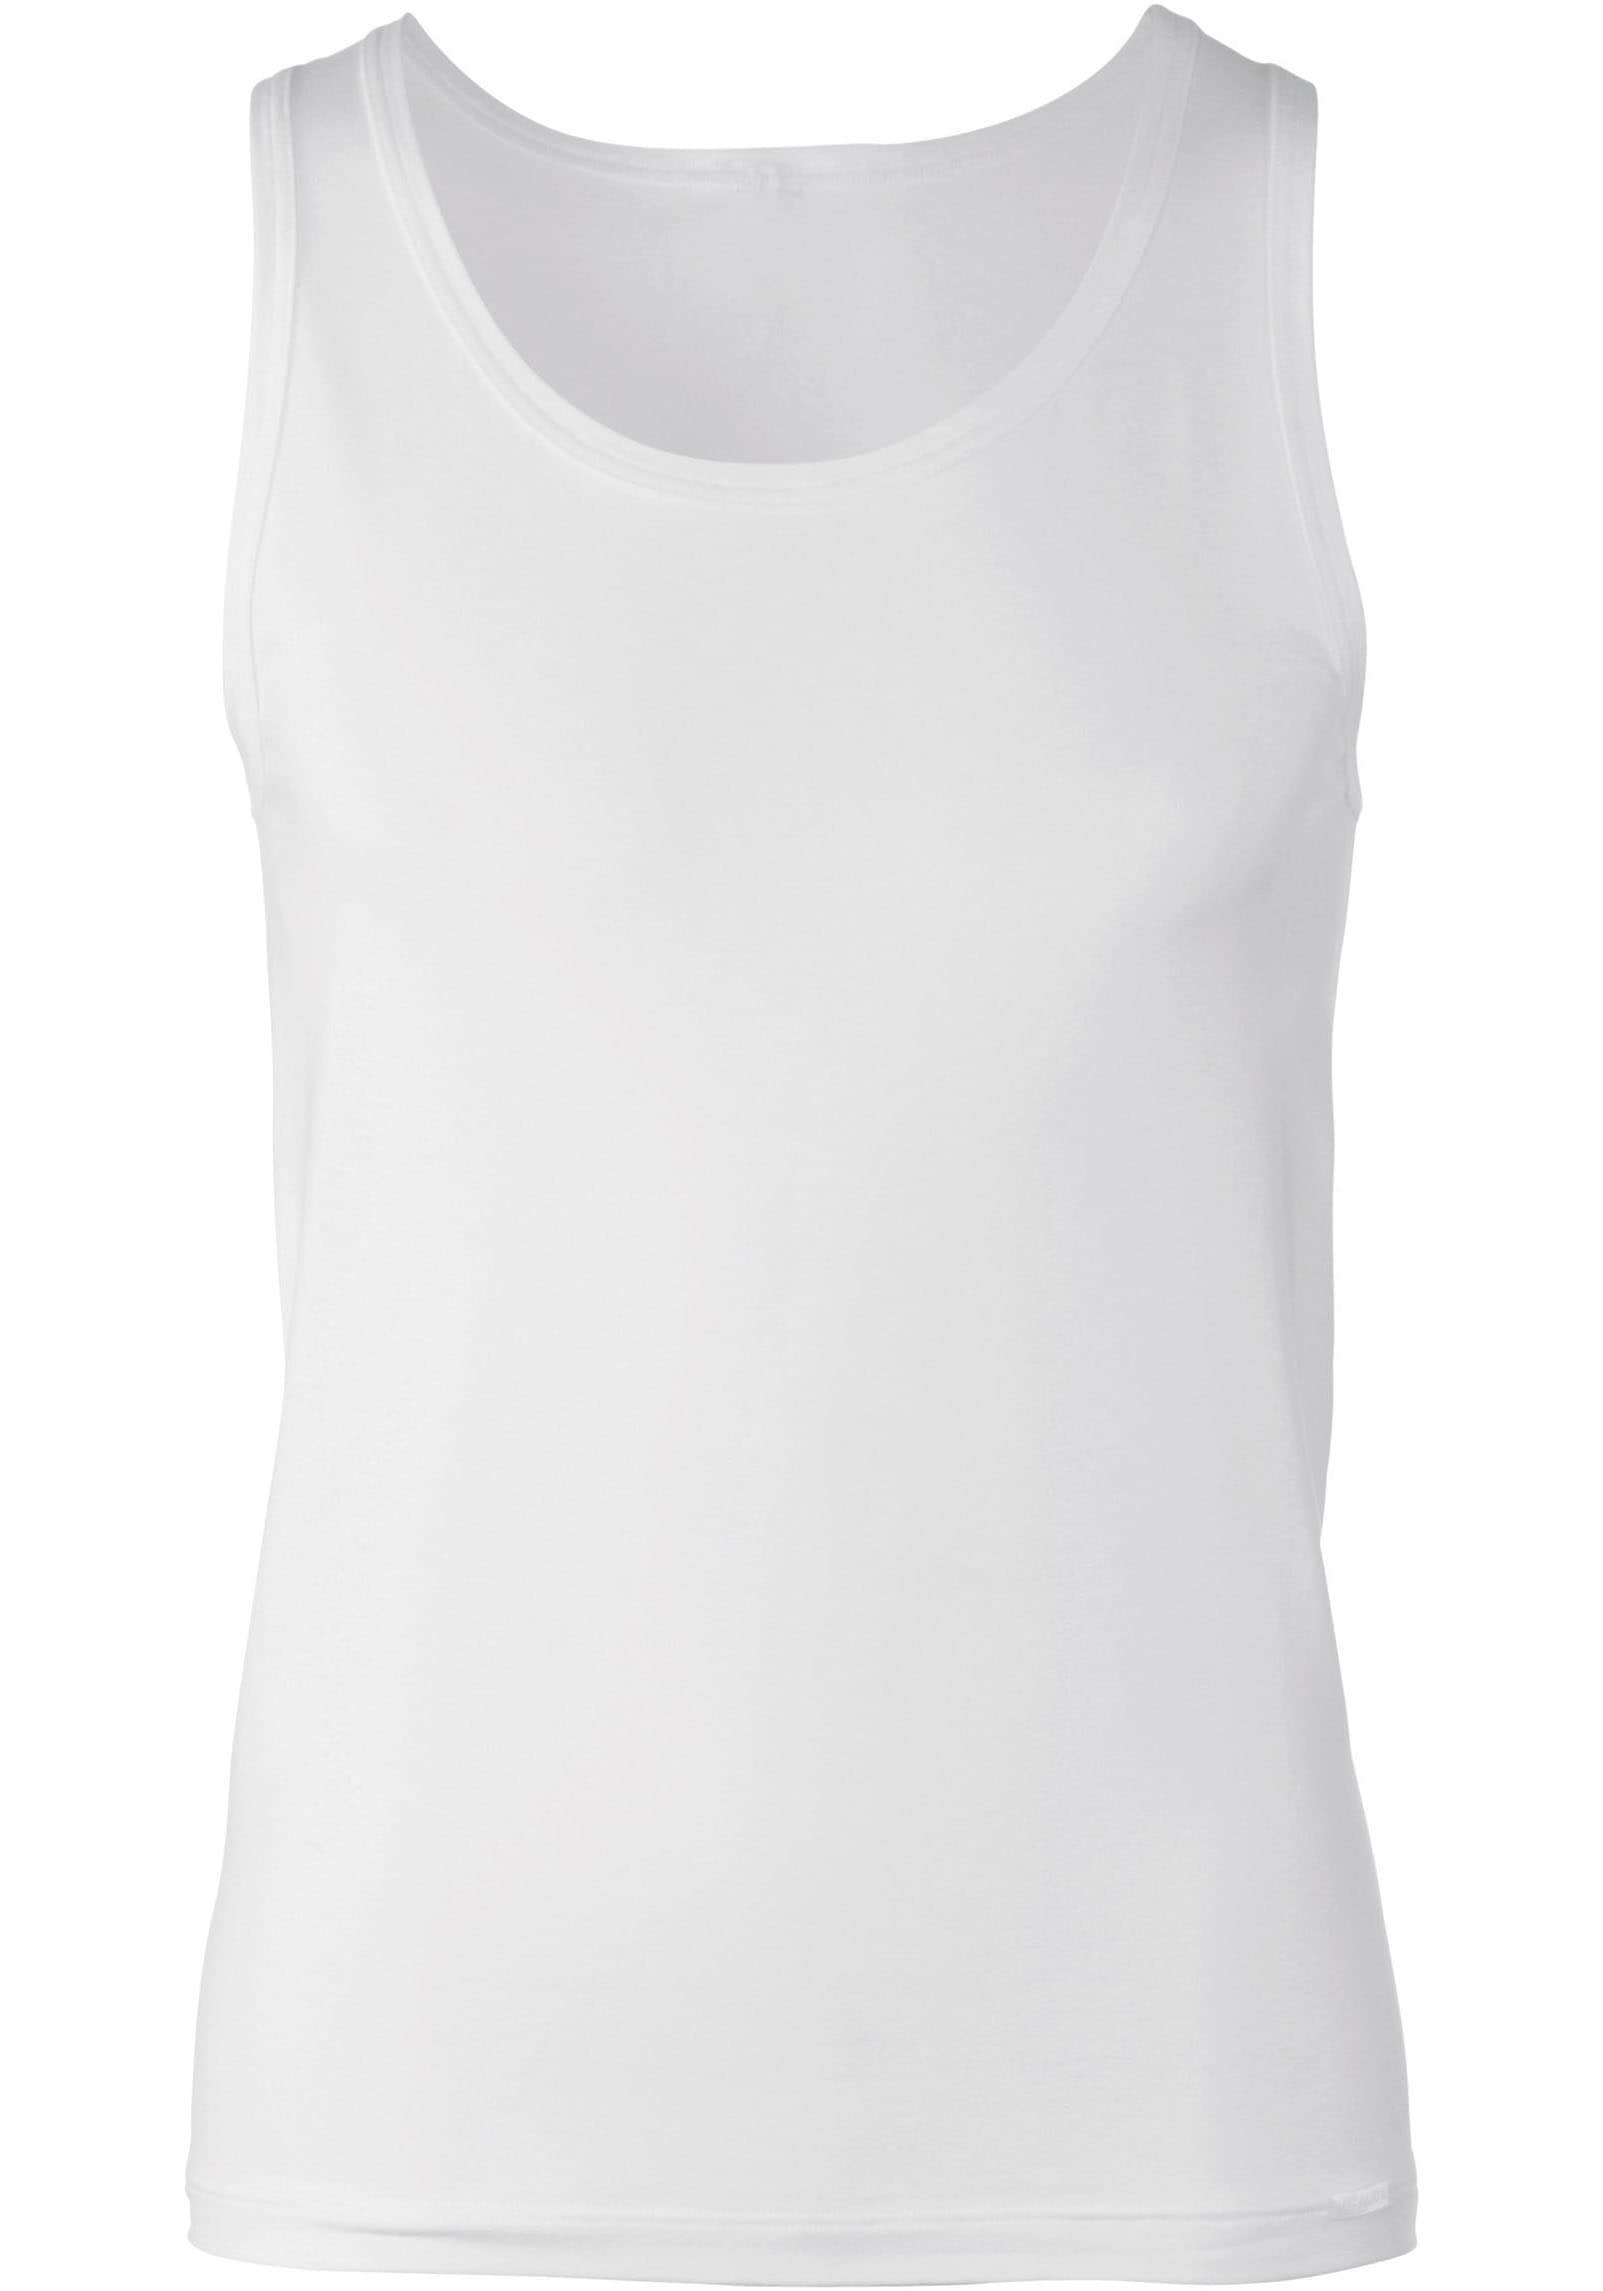 CALIDA Achselhemd »Focus«, Unterhemd mit eingefasstem Rundhalsausschnitt, gerader Schnitt